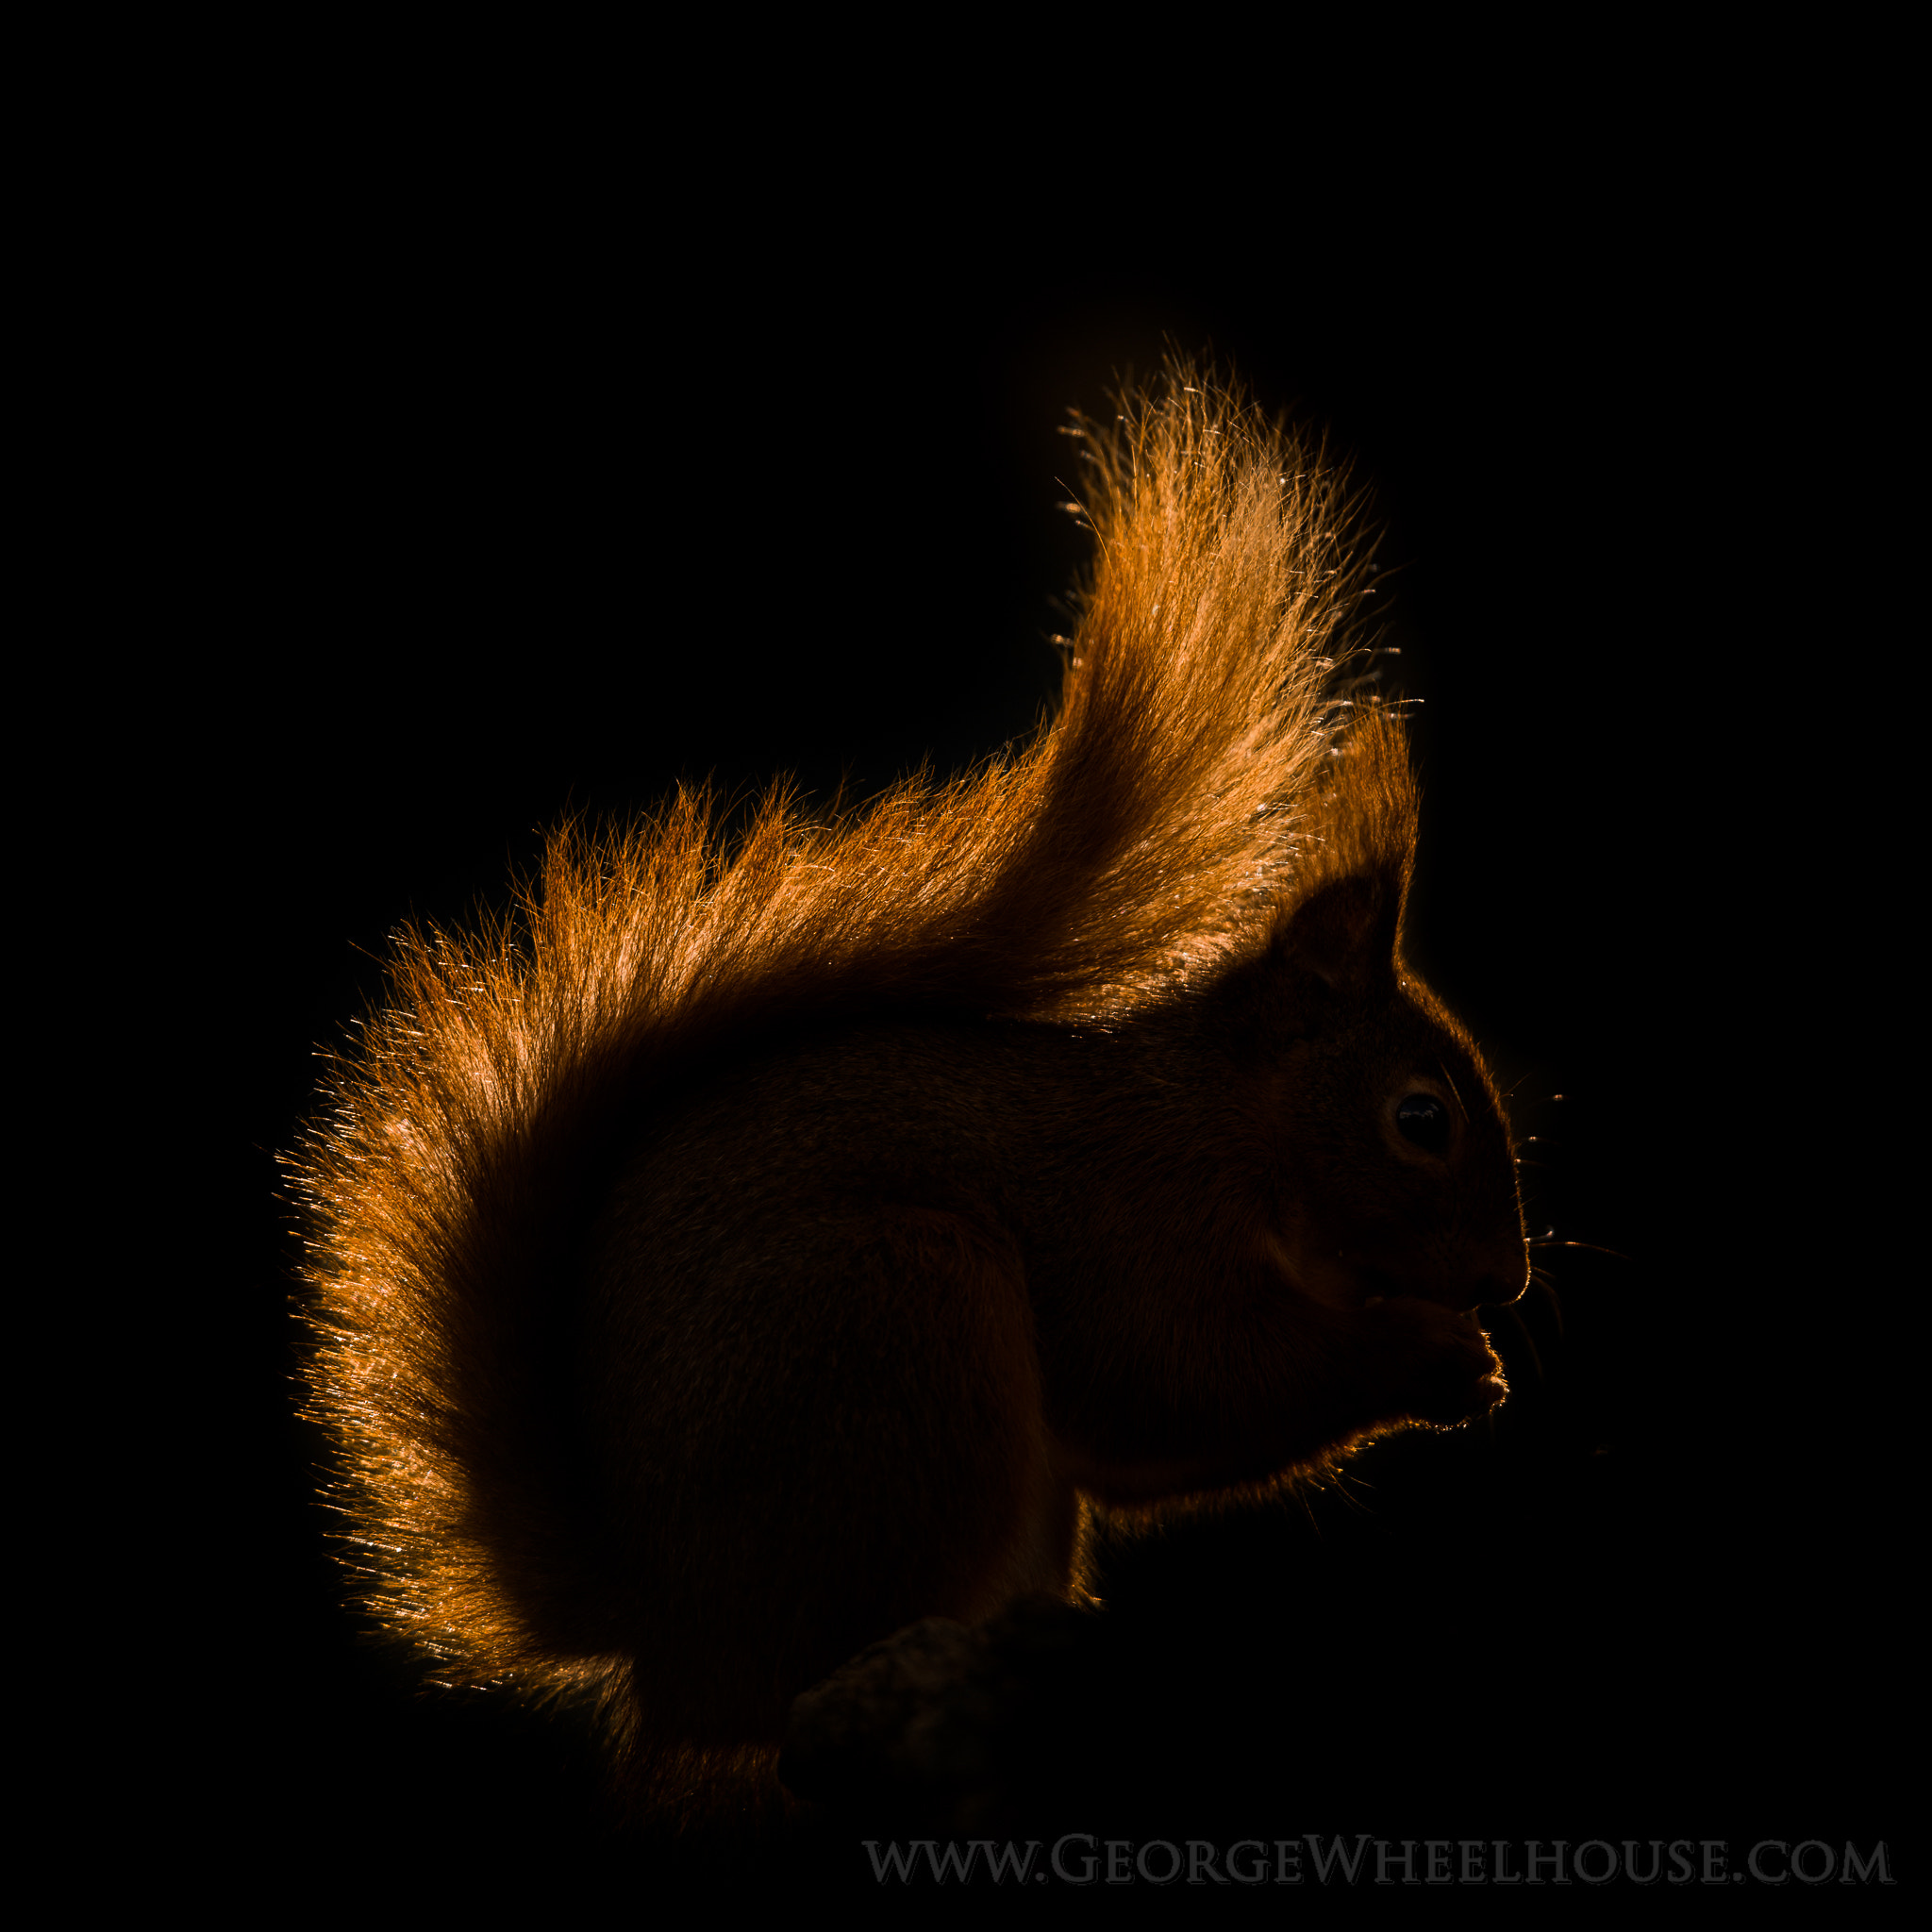 Nikon D800 + AF-S Nikkor 300mm f/2.8D IF-ED II sample photo. Back-lit red squirrel photography